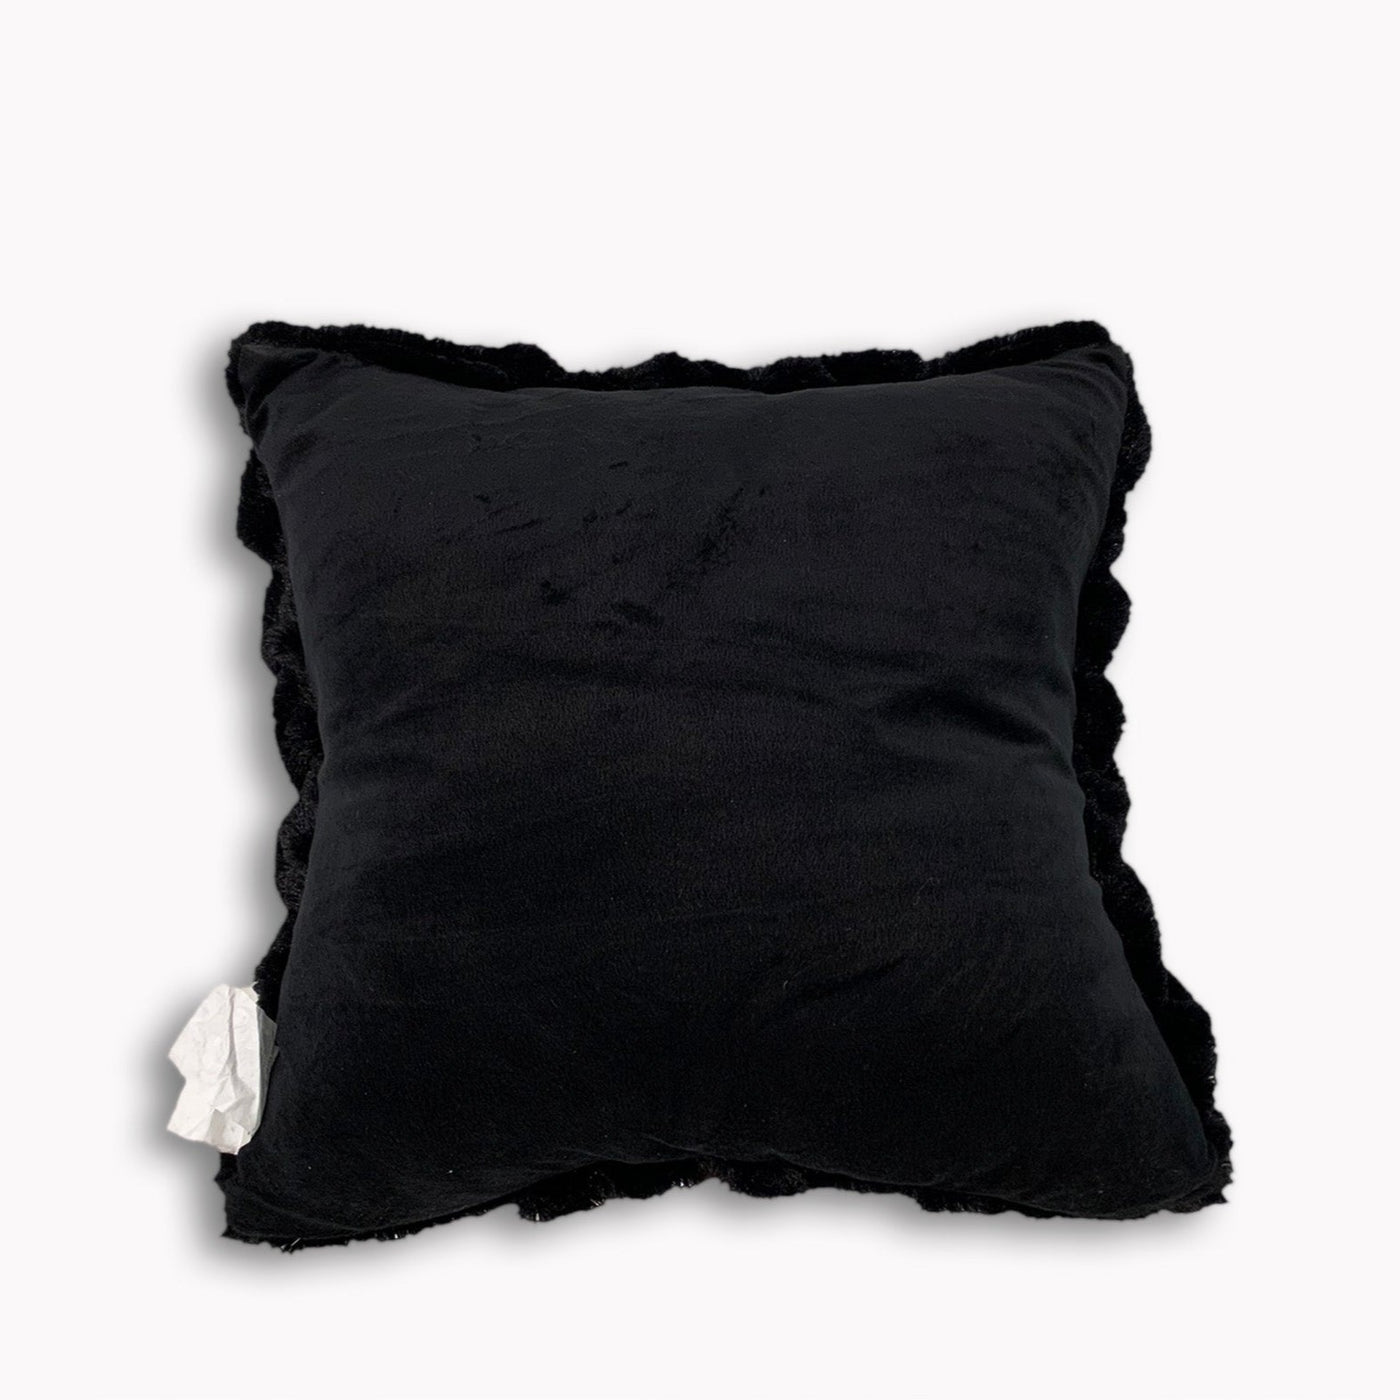 Soft Heavy Faux Fur Loufie Pillow by Rug Factory Plus